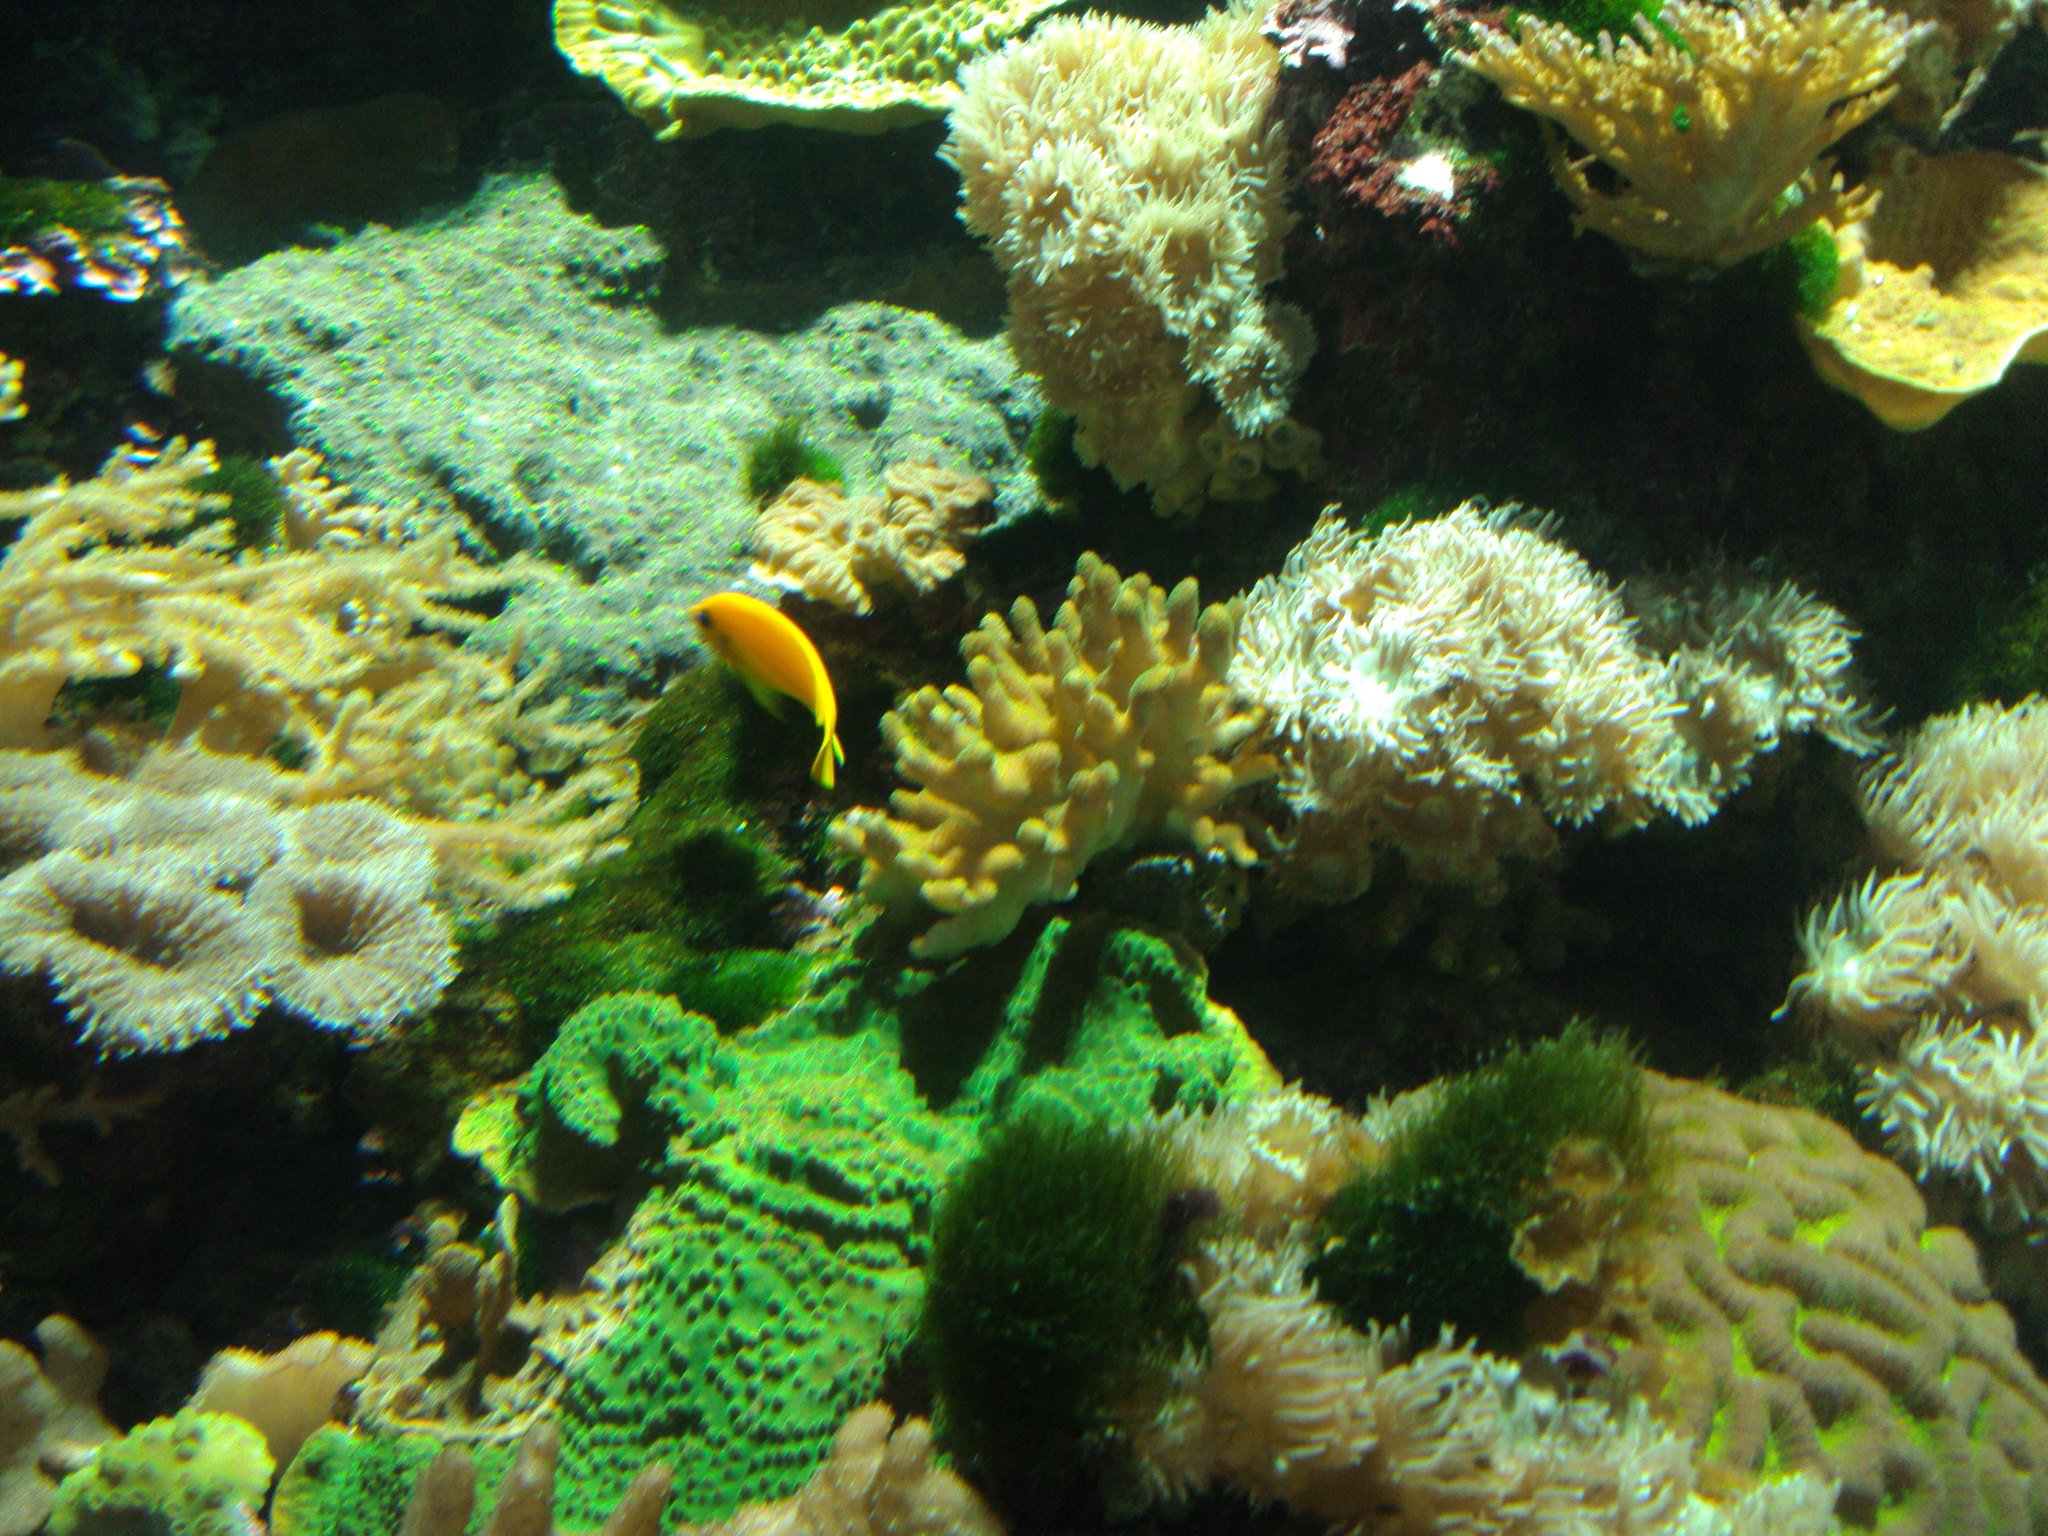 Corales coloridos dentro de una pecera. | Imagen: Flickr